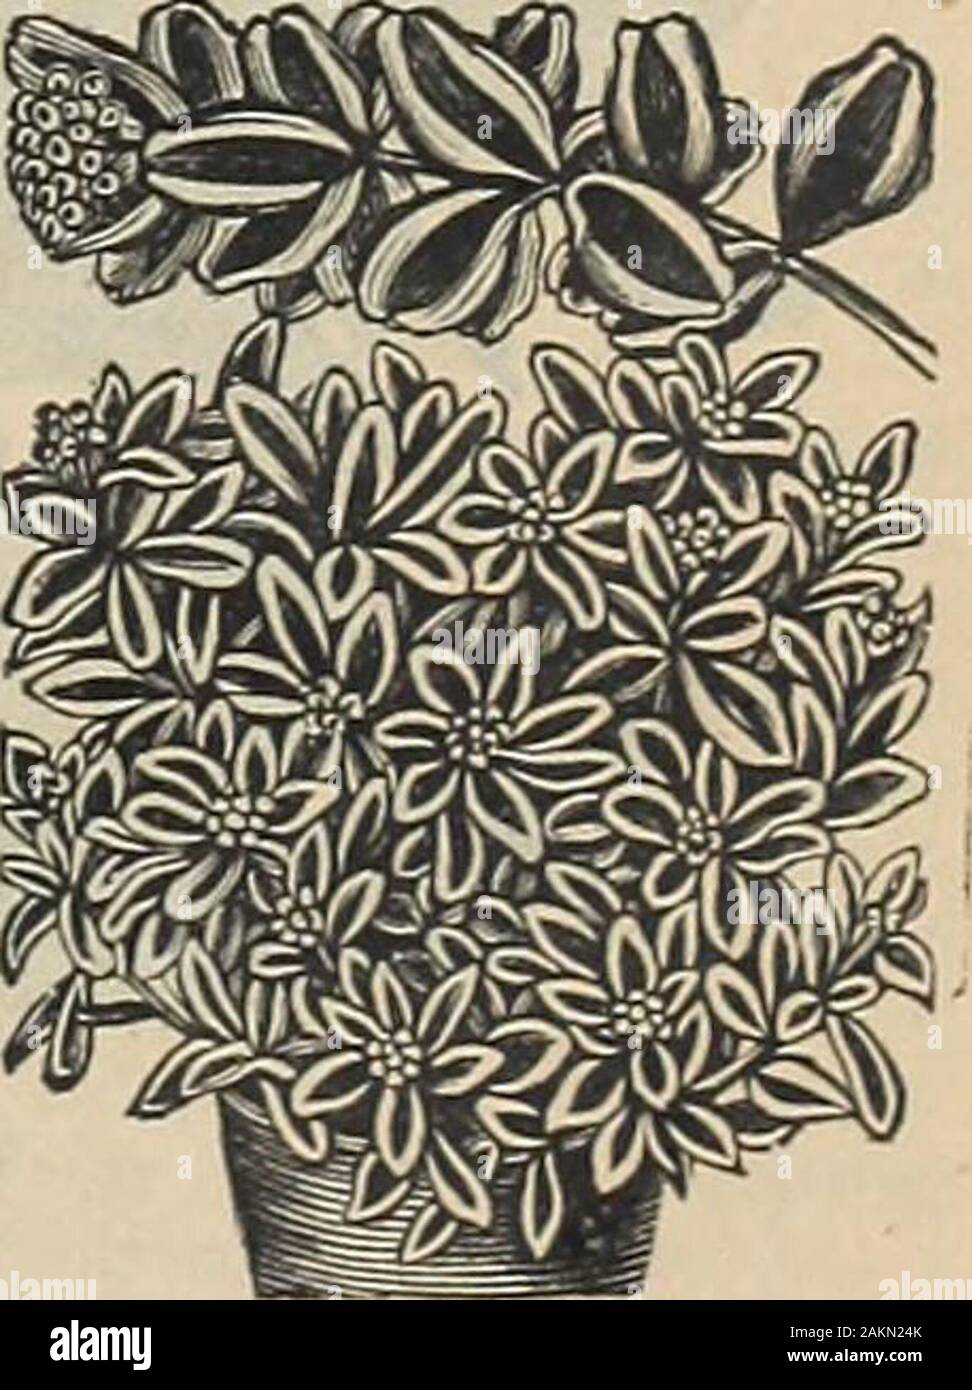 Die Maule samen Buch: 1917. Euphorbia Heteroph-t lla 1328 HETEROPHLL, einer Datei auf theMountain. Dekorative Blätter, die takeon eine tiefe gesund aussehen. Pkt., 10 cts. 7329 VARIEGATA. . Schnee auf den Moun-Tain. Ein auffälliges Grenze Anlage mit foliageveined und breitrandig mit Weiß; flowerswhite. Paket, 5 Cent. Nachtkerzenöl Heu - dy Jährliche dieses aiinual Pflanze ist der einfachsten Kultur, und verdient einen Platz in jedem Garten. Diegelben Anschlüsse und weißen Blüten öffnen früh everyevening und zuletzt auch in der folgende Tag. Produziert frei große, einzelne Mohnblume - likeflowers, die meisten brilliaut angezeigt. 1330 gemischte Farbe Stockfoto